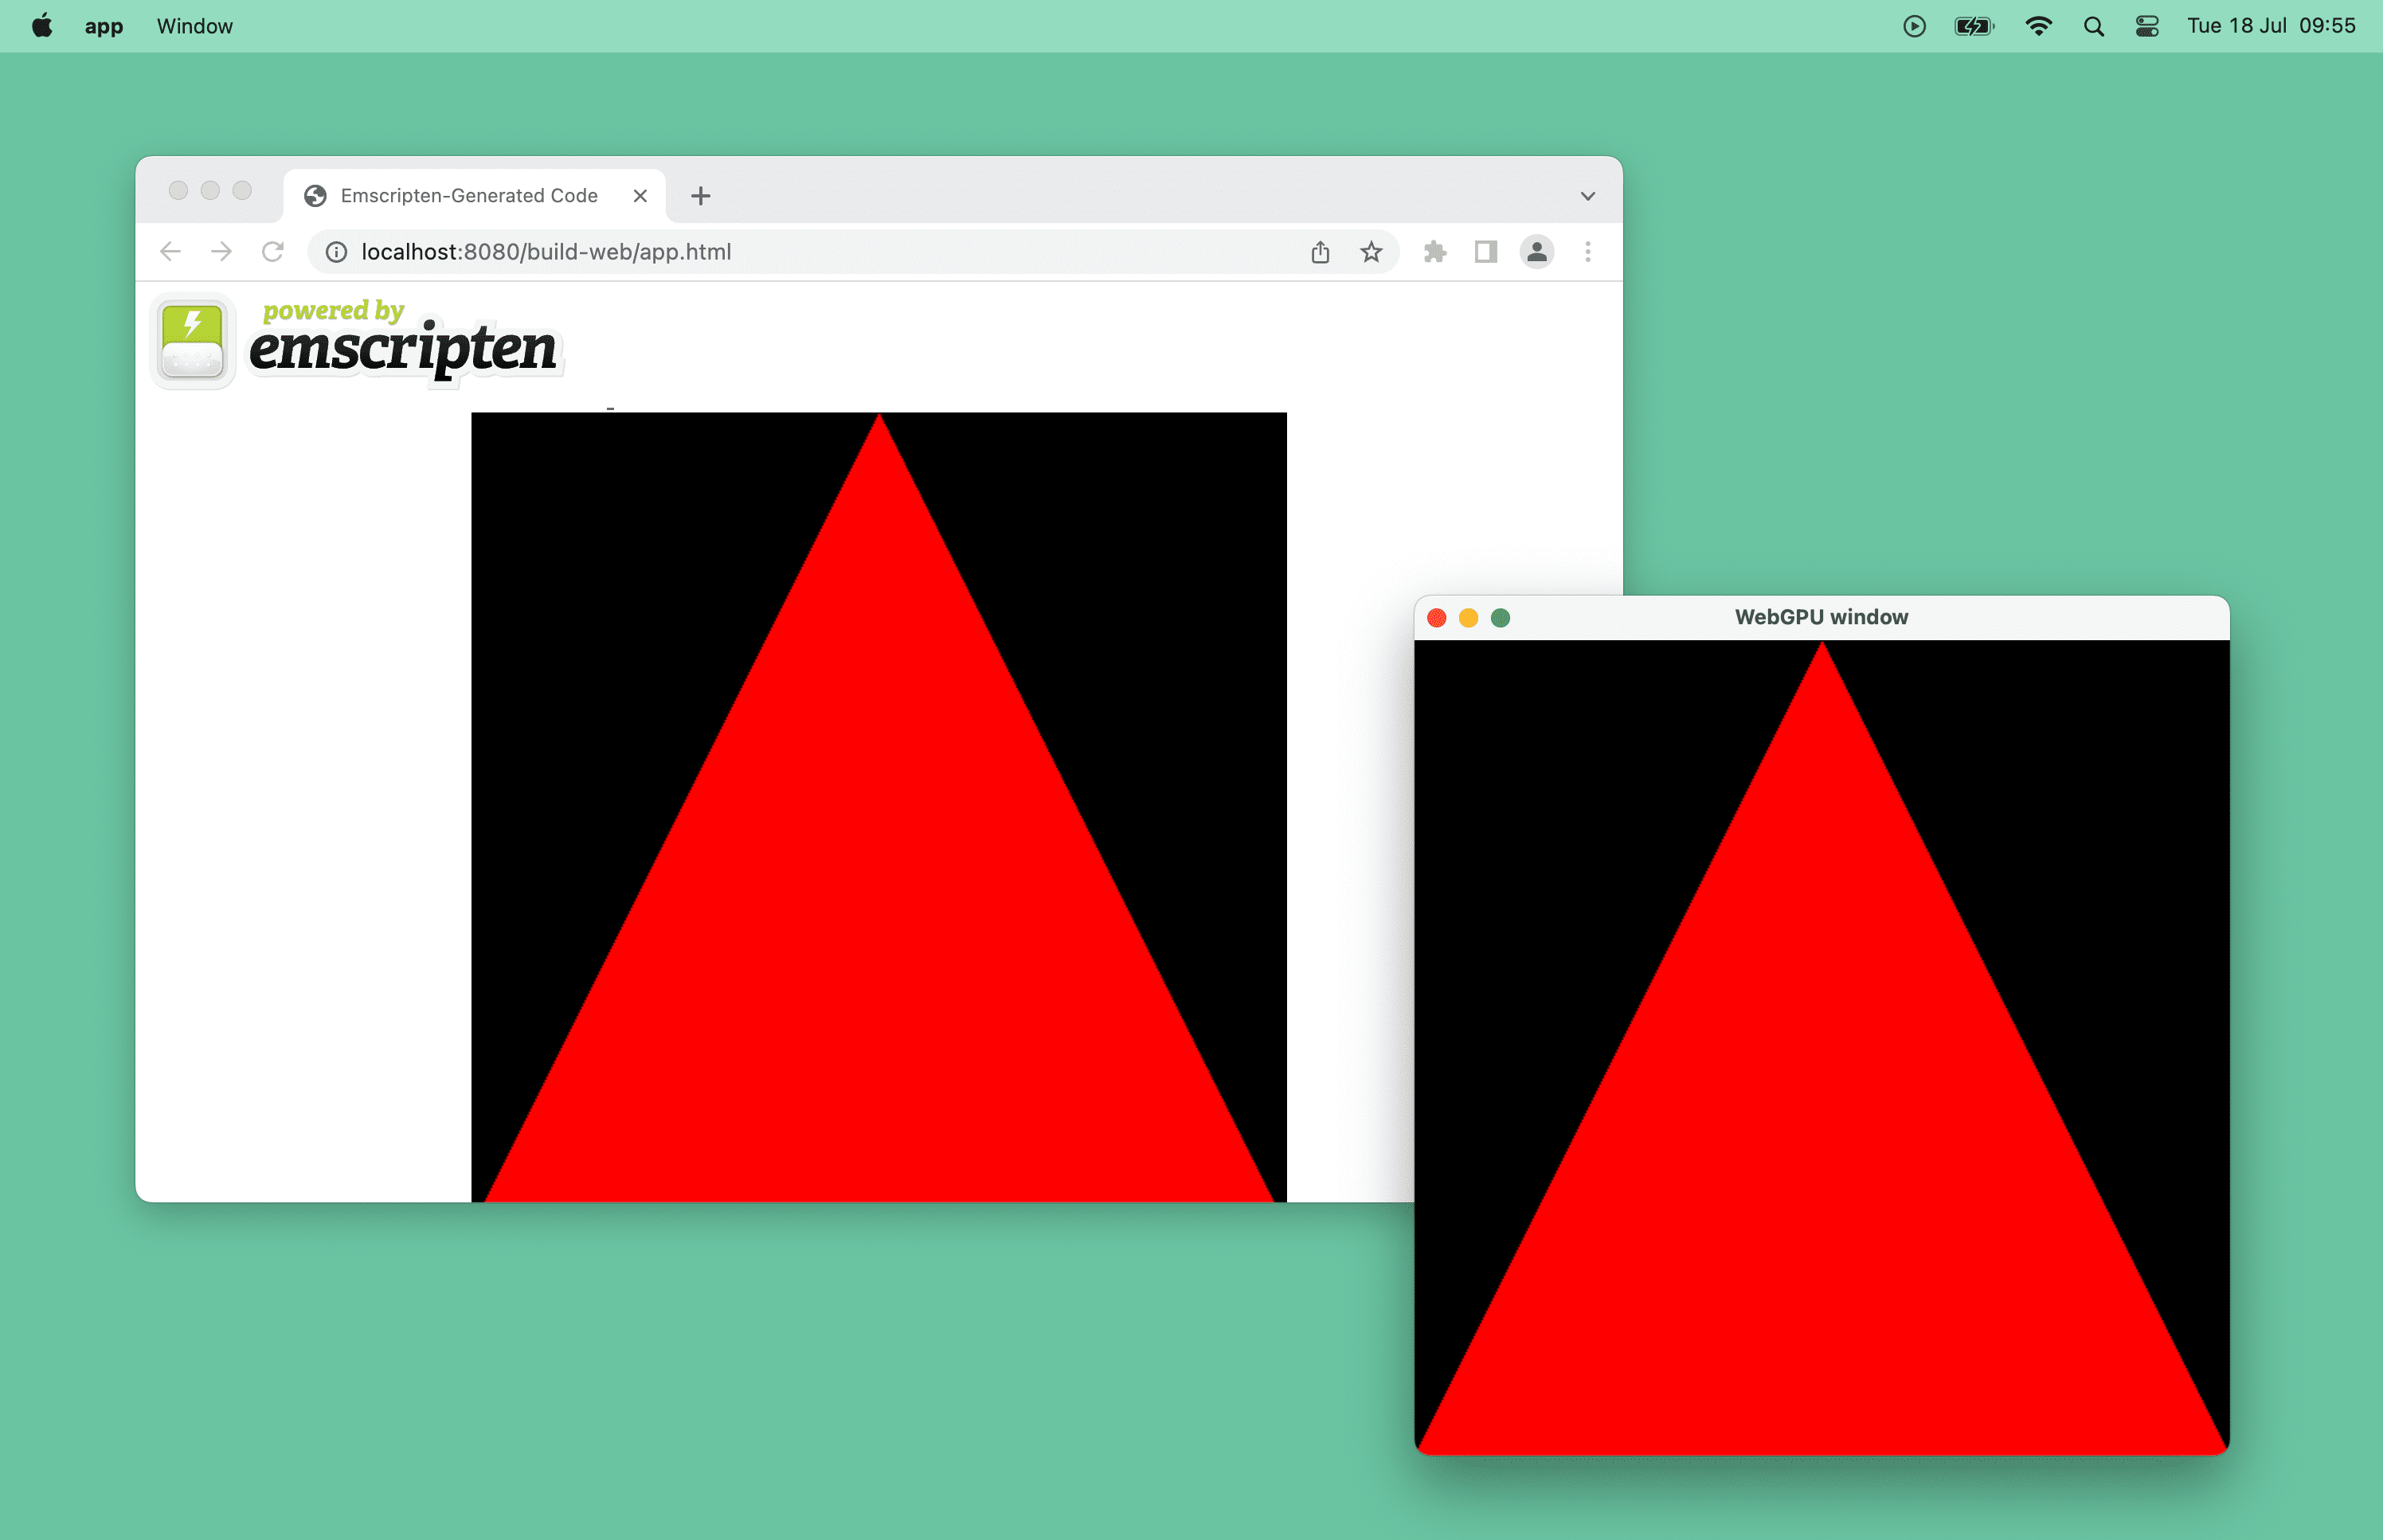 브라우저 창과 macOS의 데스크톱 창에서 WebGPU로 구동되는 빨간색 삼각형의 스크린샷